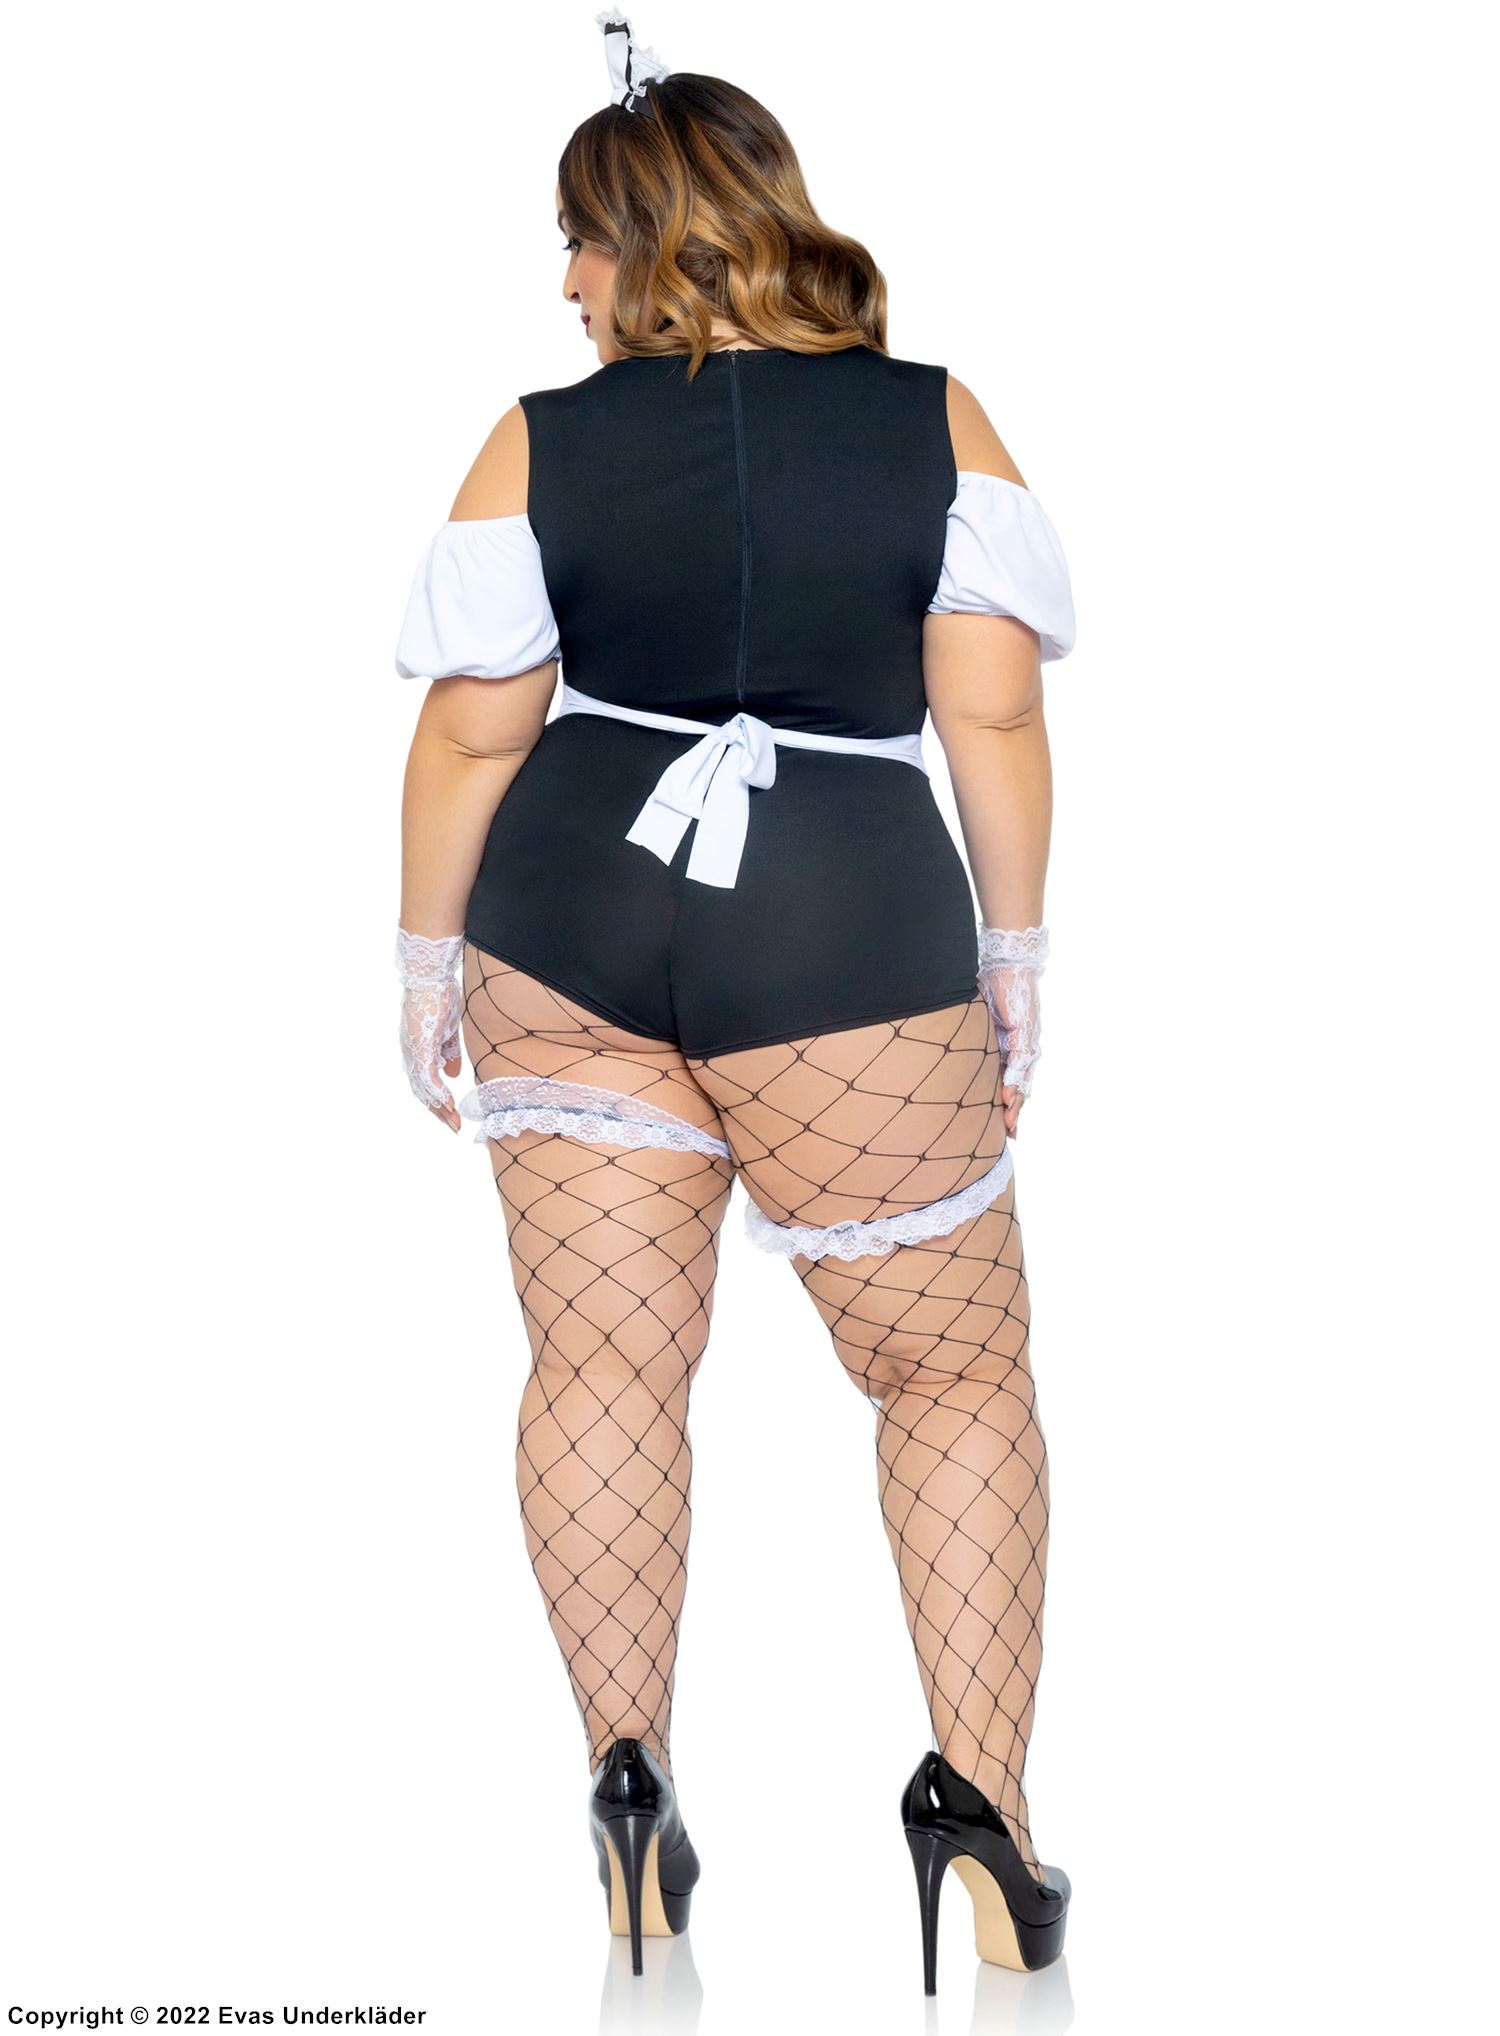 French maid, kostymeundertøysbody, volangkant, forkle, off-shoulder, innebygde strømpeholdere, rynker, plus size